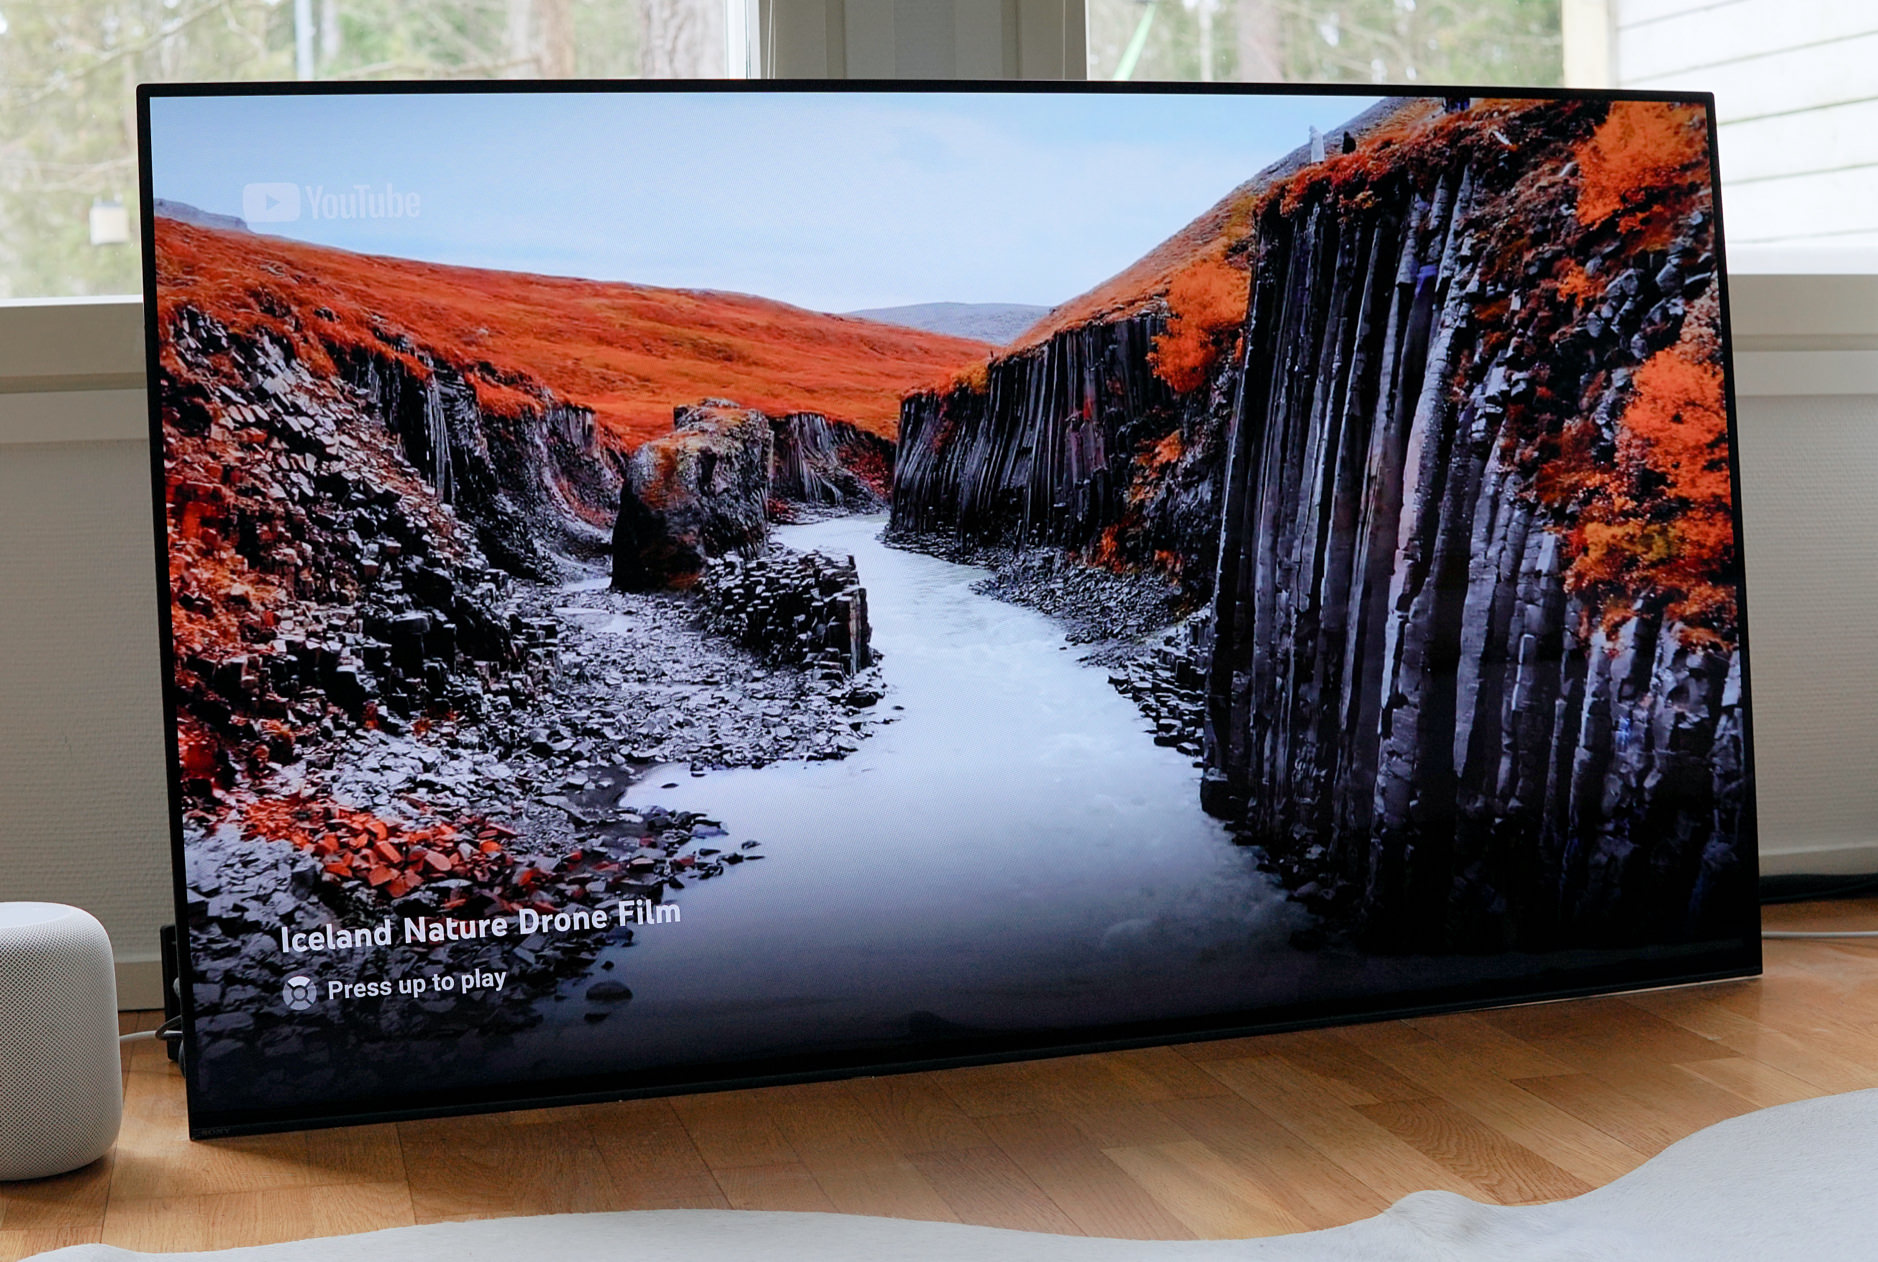 Das Bild zeigt einen großen Fernseher in einem hellen Raum, der ein YouTube-Video mit dem Titel "Iceland Nature Drone Film" anzeigt. Die Szene auf dem Bildschirm stellt eine beeindruckende Landschaft mit einer Schlucht dar, umgeben von roten Moosflächen und basaltischen Felsformationen.